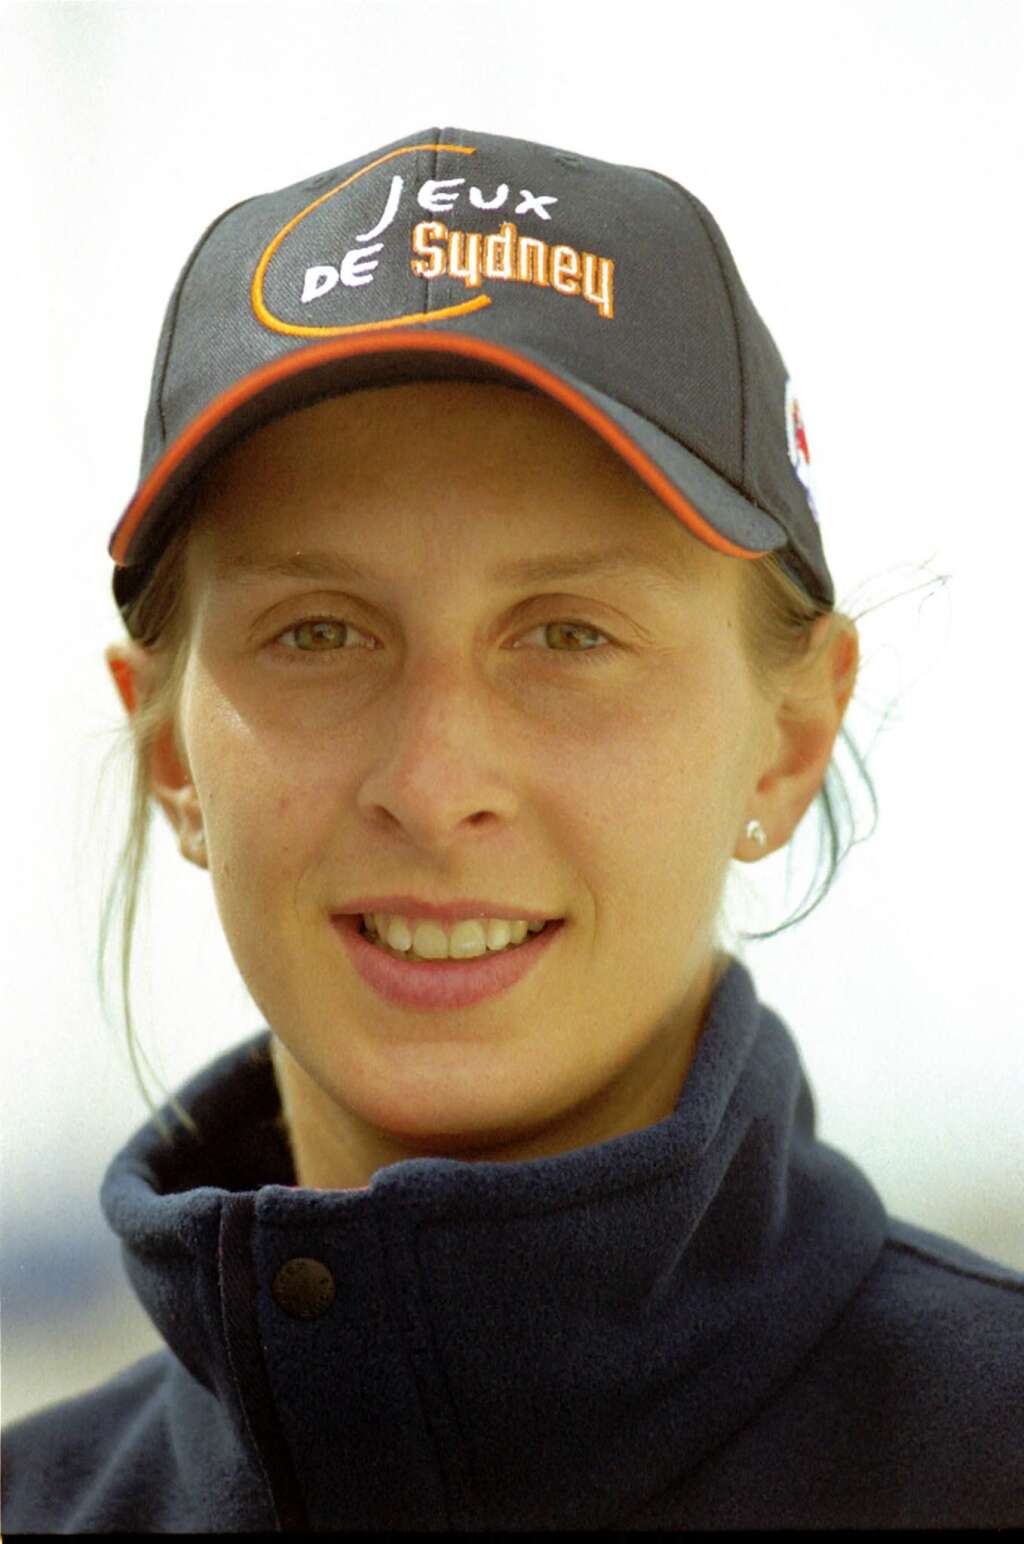 4 juillet - Lise Vidal - La double championne d’Europe, en 1999 et 2004, Lise Vidal, est décédée brutalement à l’âge de 43 ans, a annoncé le dimanche 4 juillet la Fédération française de voile.<br /><br /><strong>>>> En savoir plus dans notre article par ici</strong>